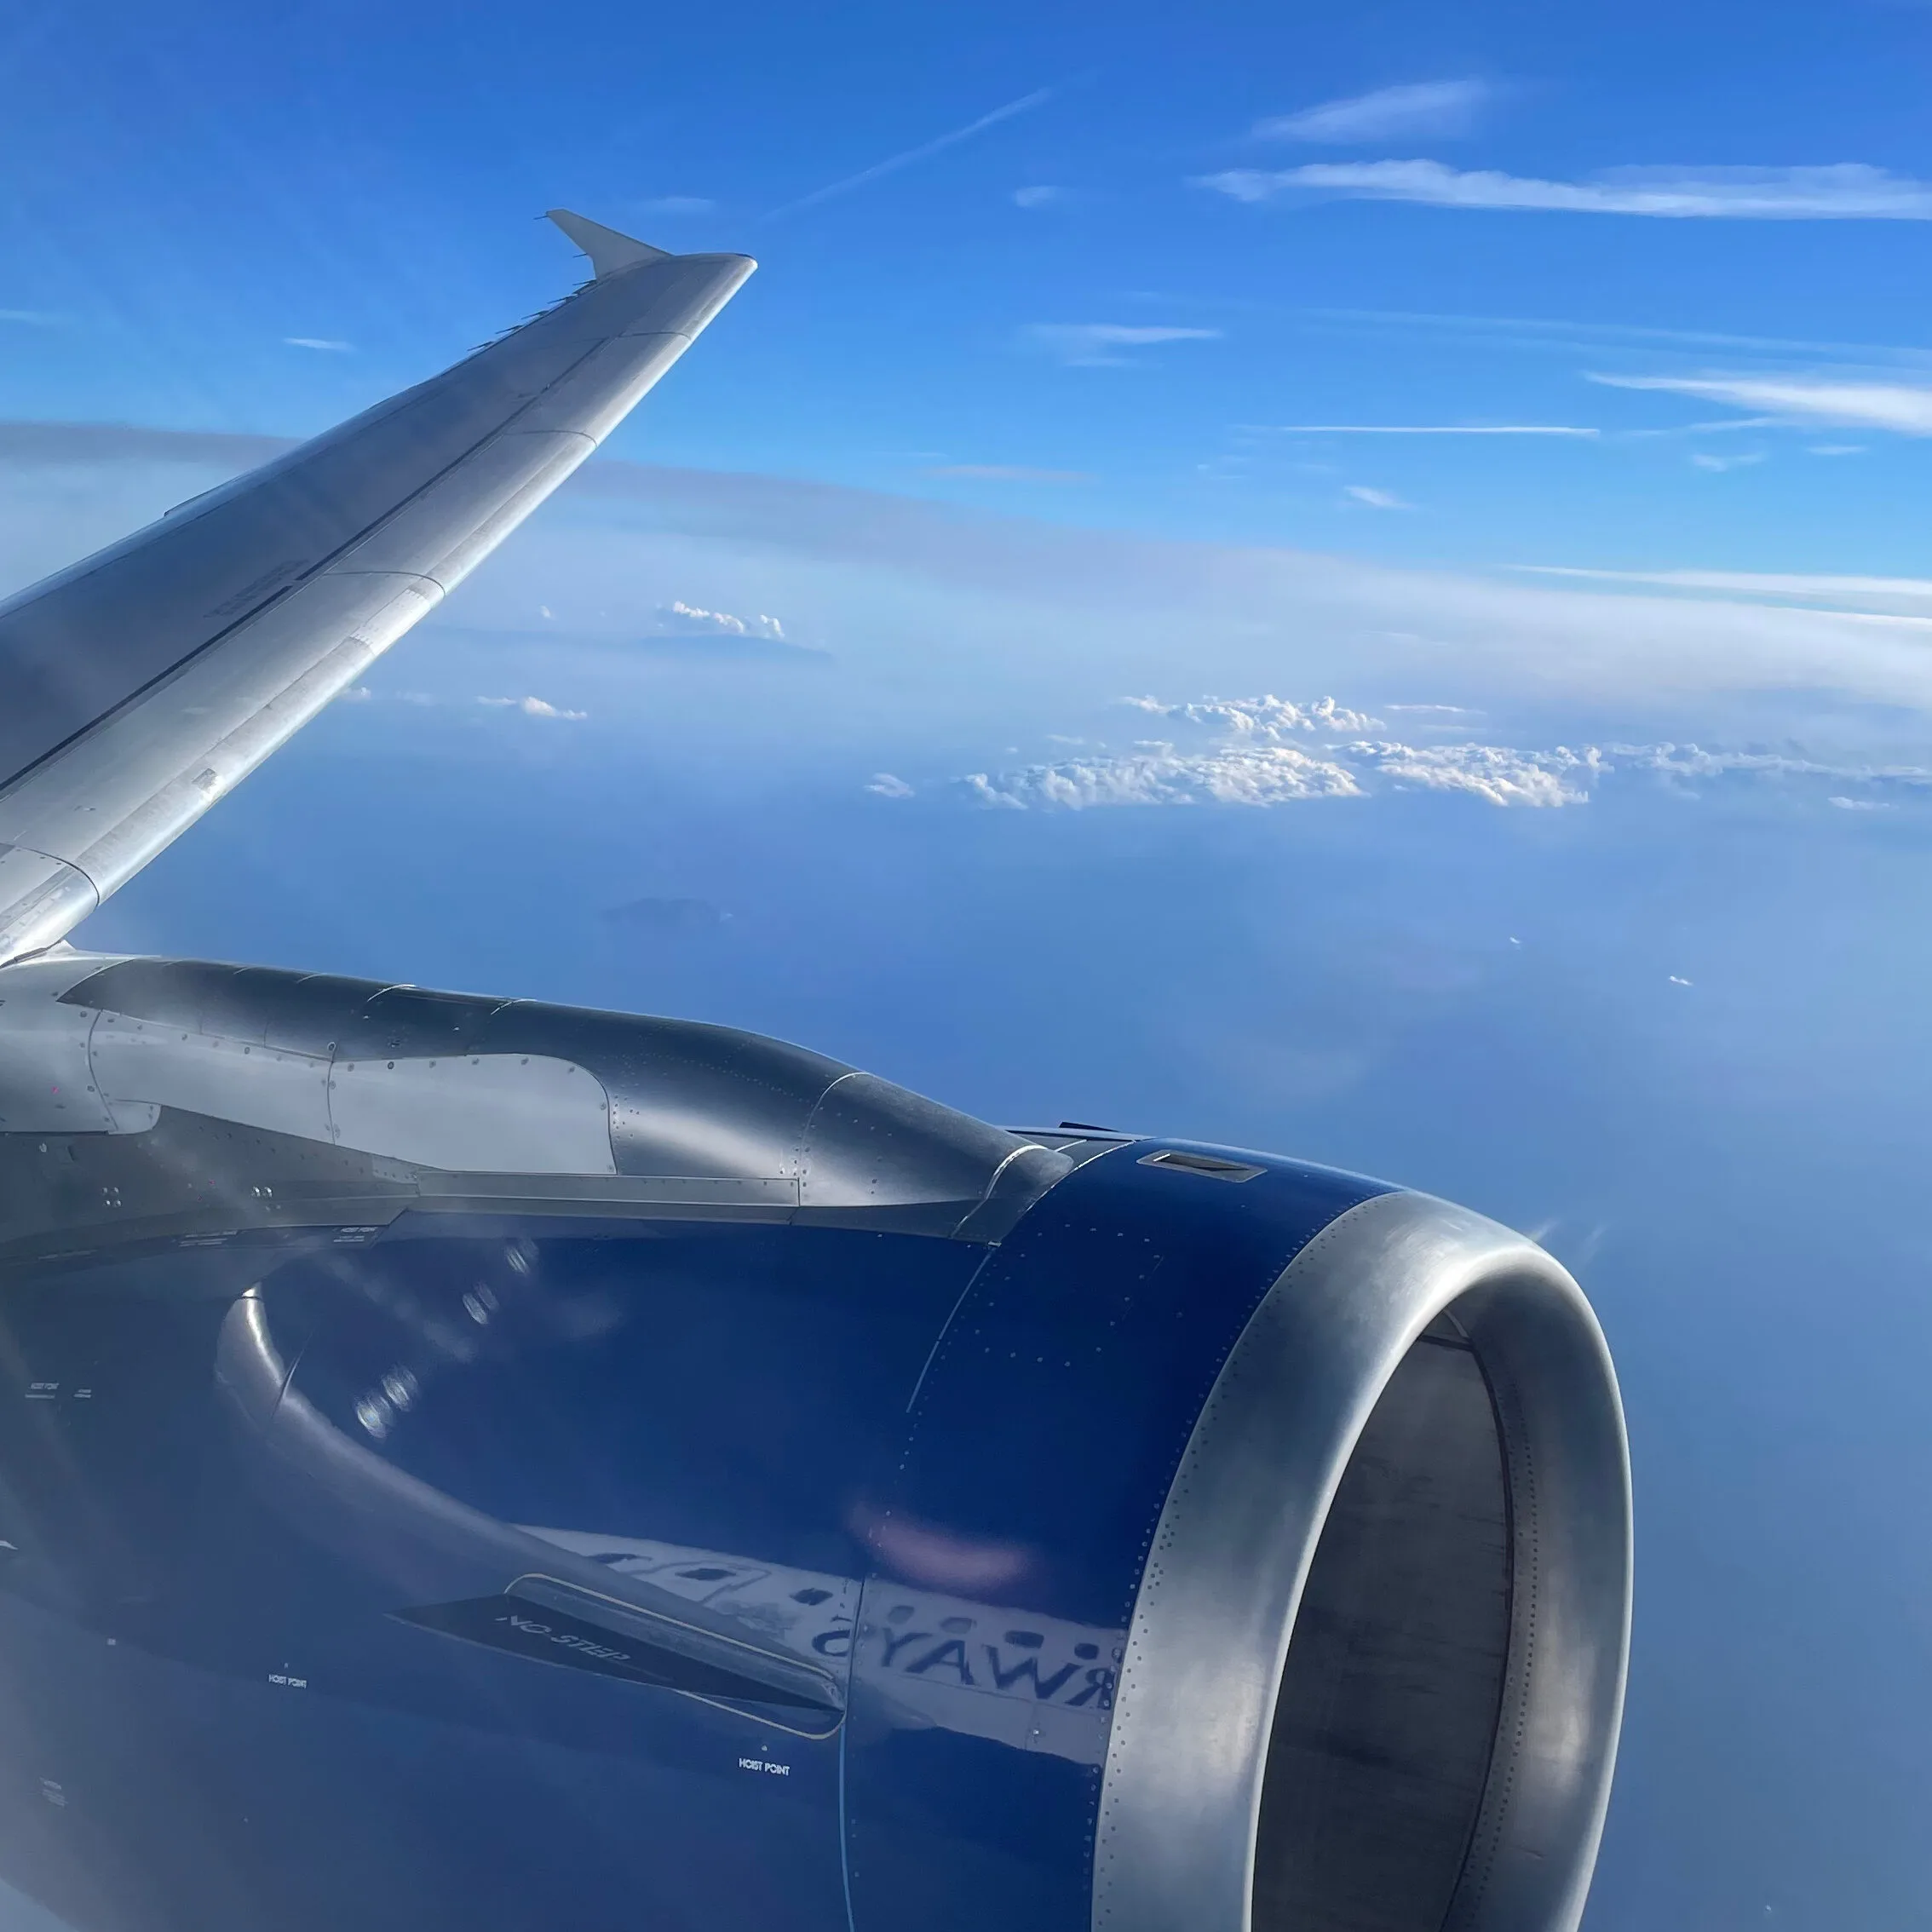 British Airways Engine View from Plane